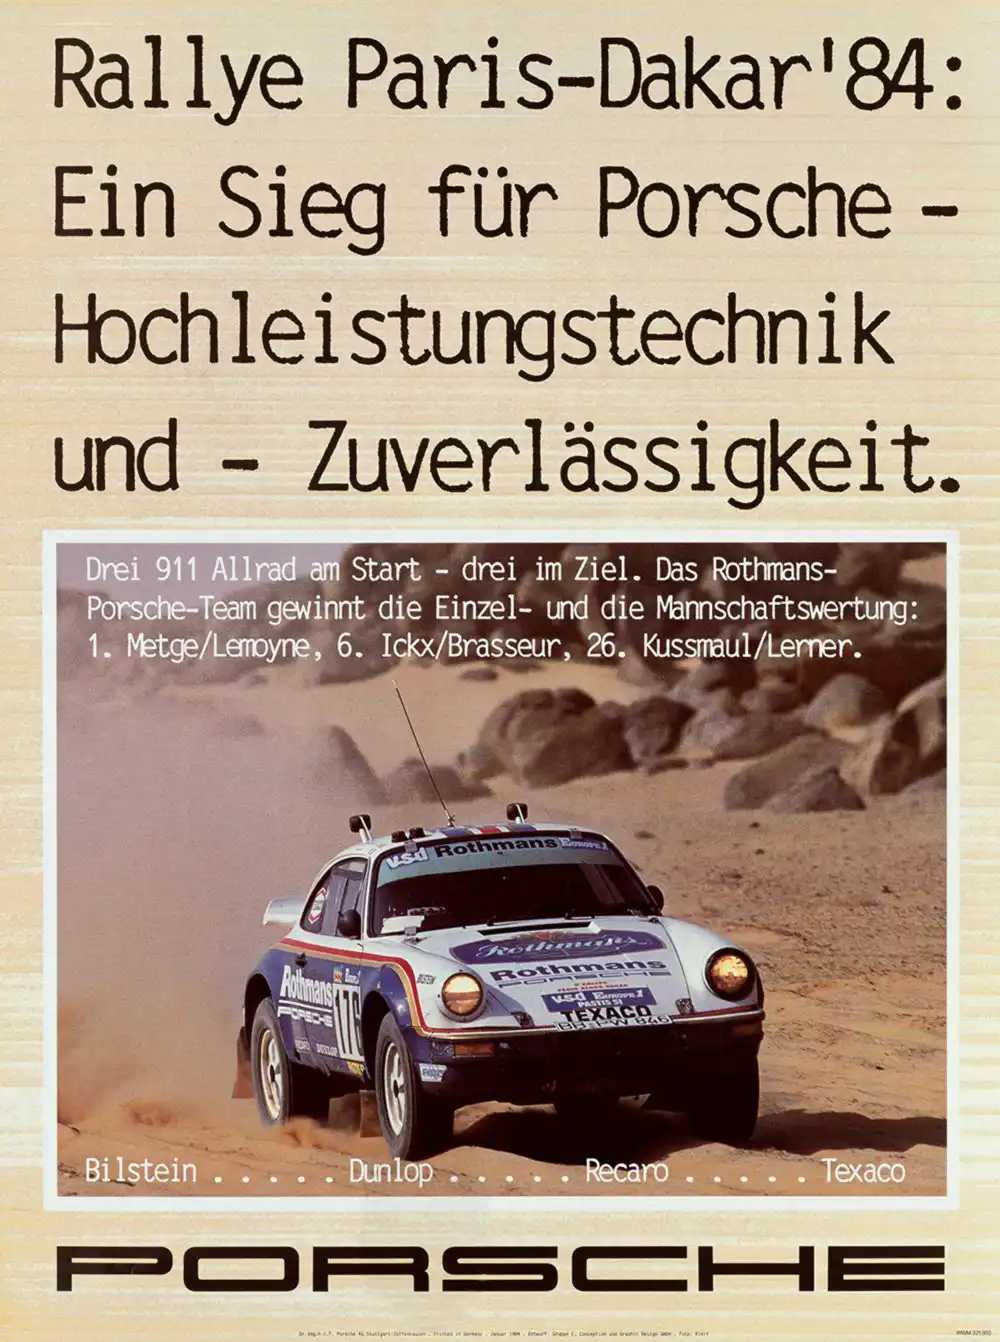 Porsche warb offensiv mit Allradkompetenz. 